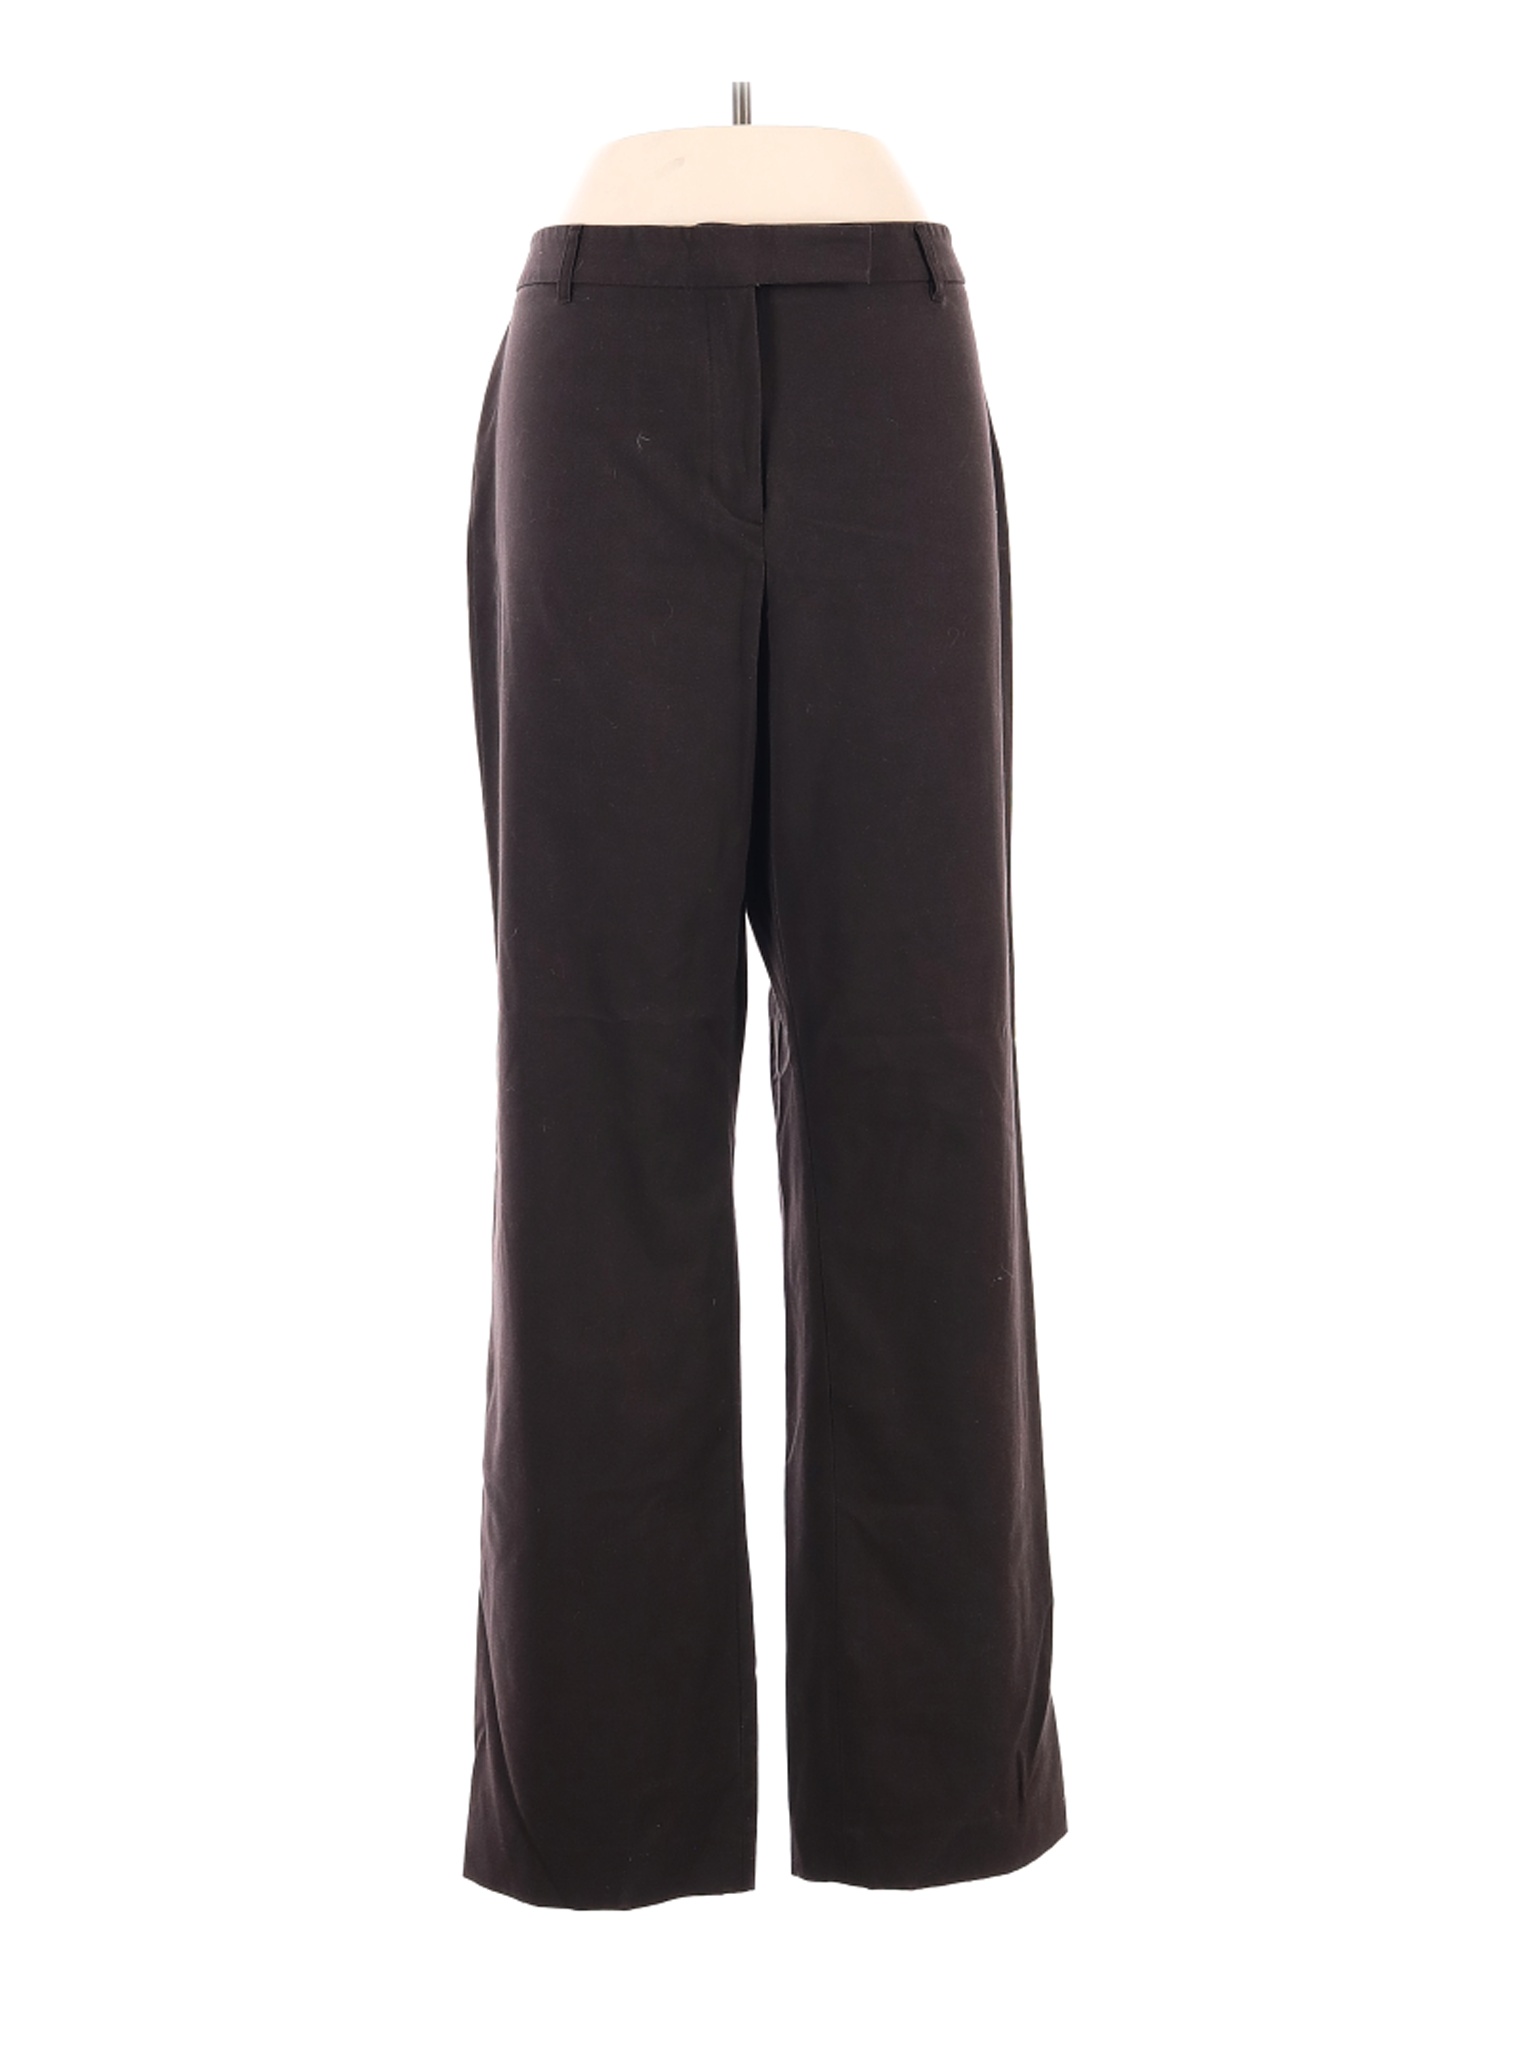 Chaus Women Black Dress Pants 14 | eBay